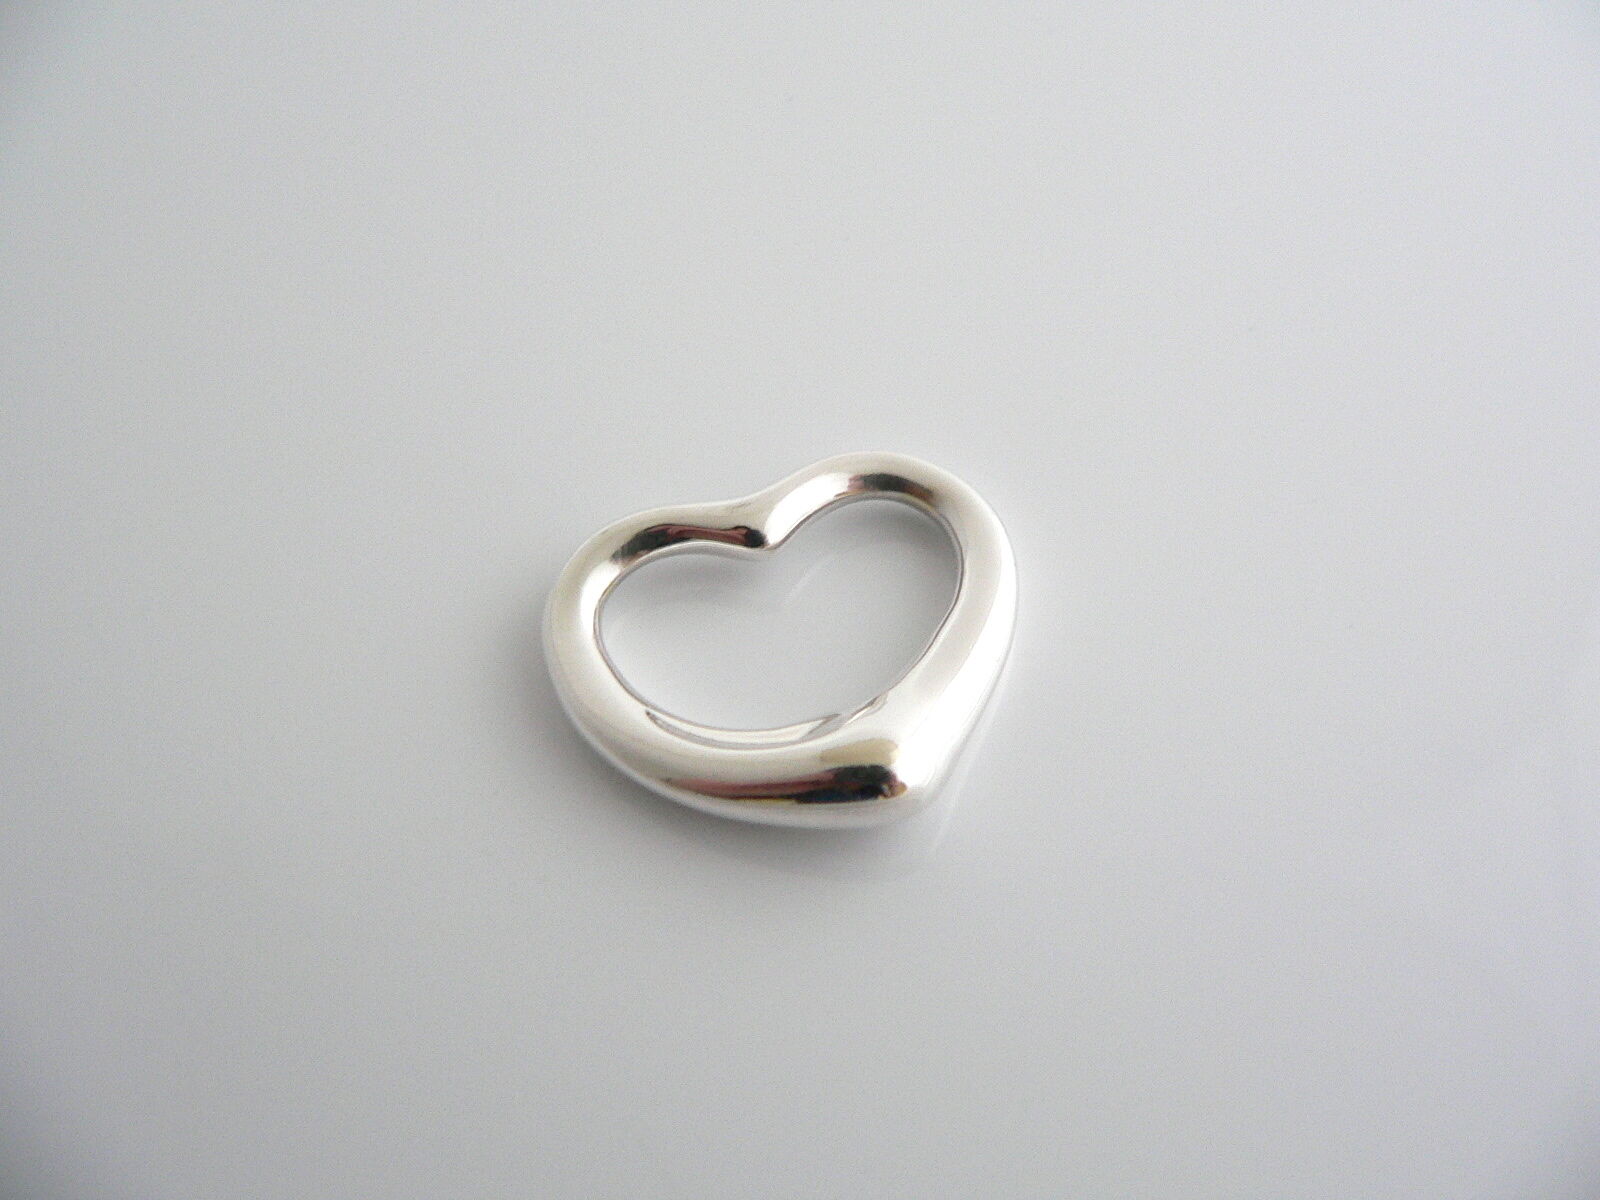 Tiffany & Co Peretti Silver Open Heart Pendant Charm Gift Love 1 inch